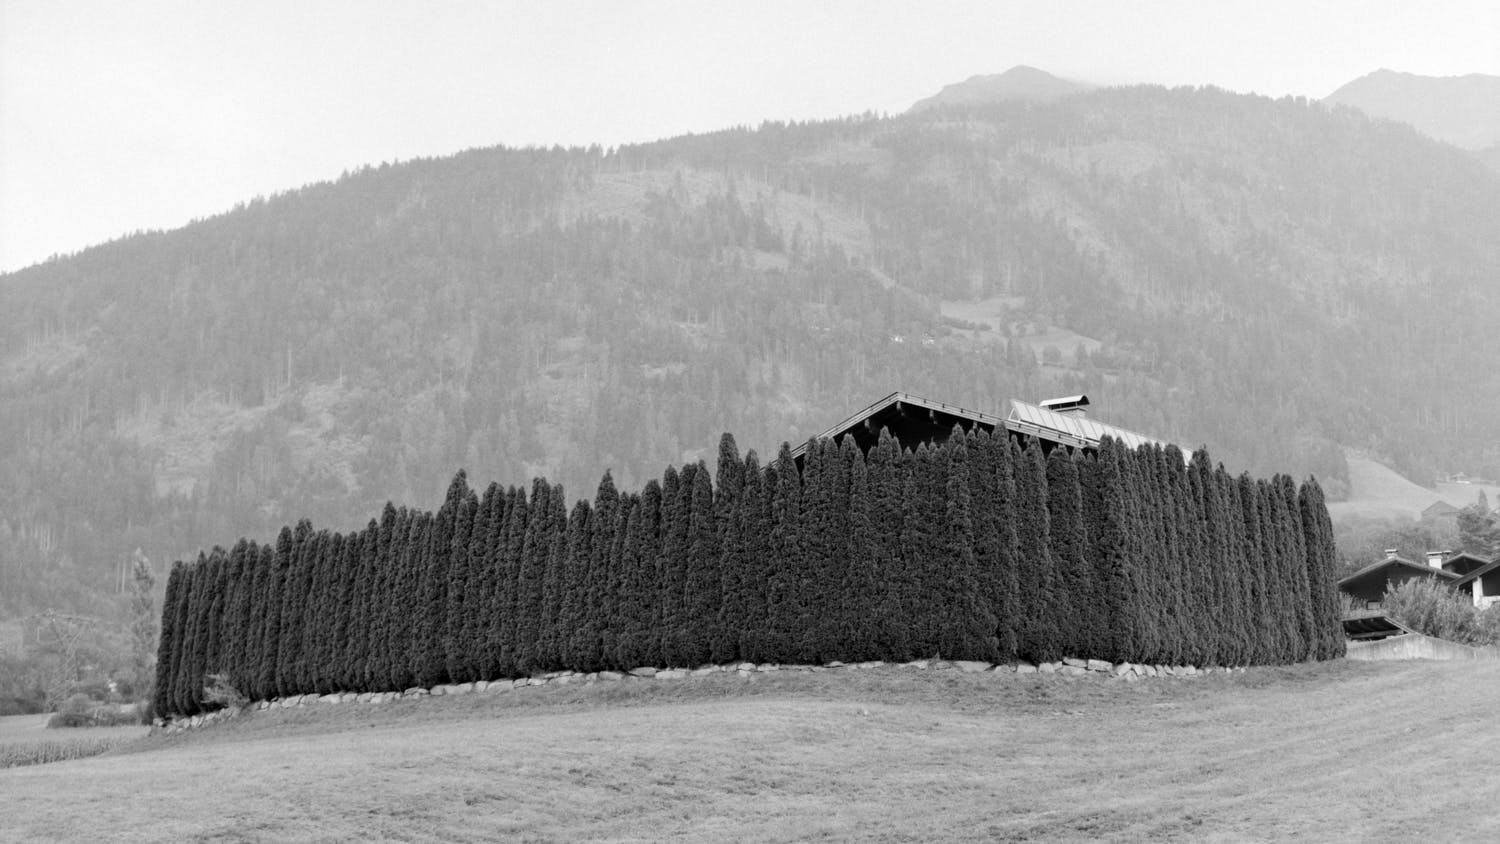 Ein einsames Haus in den Alpen, umgeben von haushohen Bäumen die es blickdicht umschließen. Im Hintergrund sind die nahen Berge zu sehen.